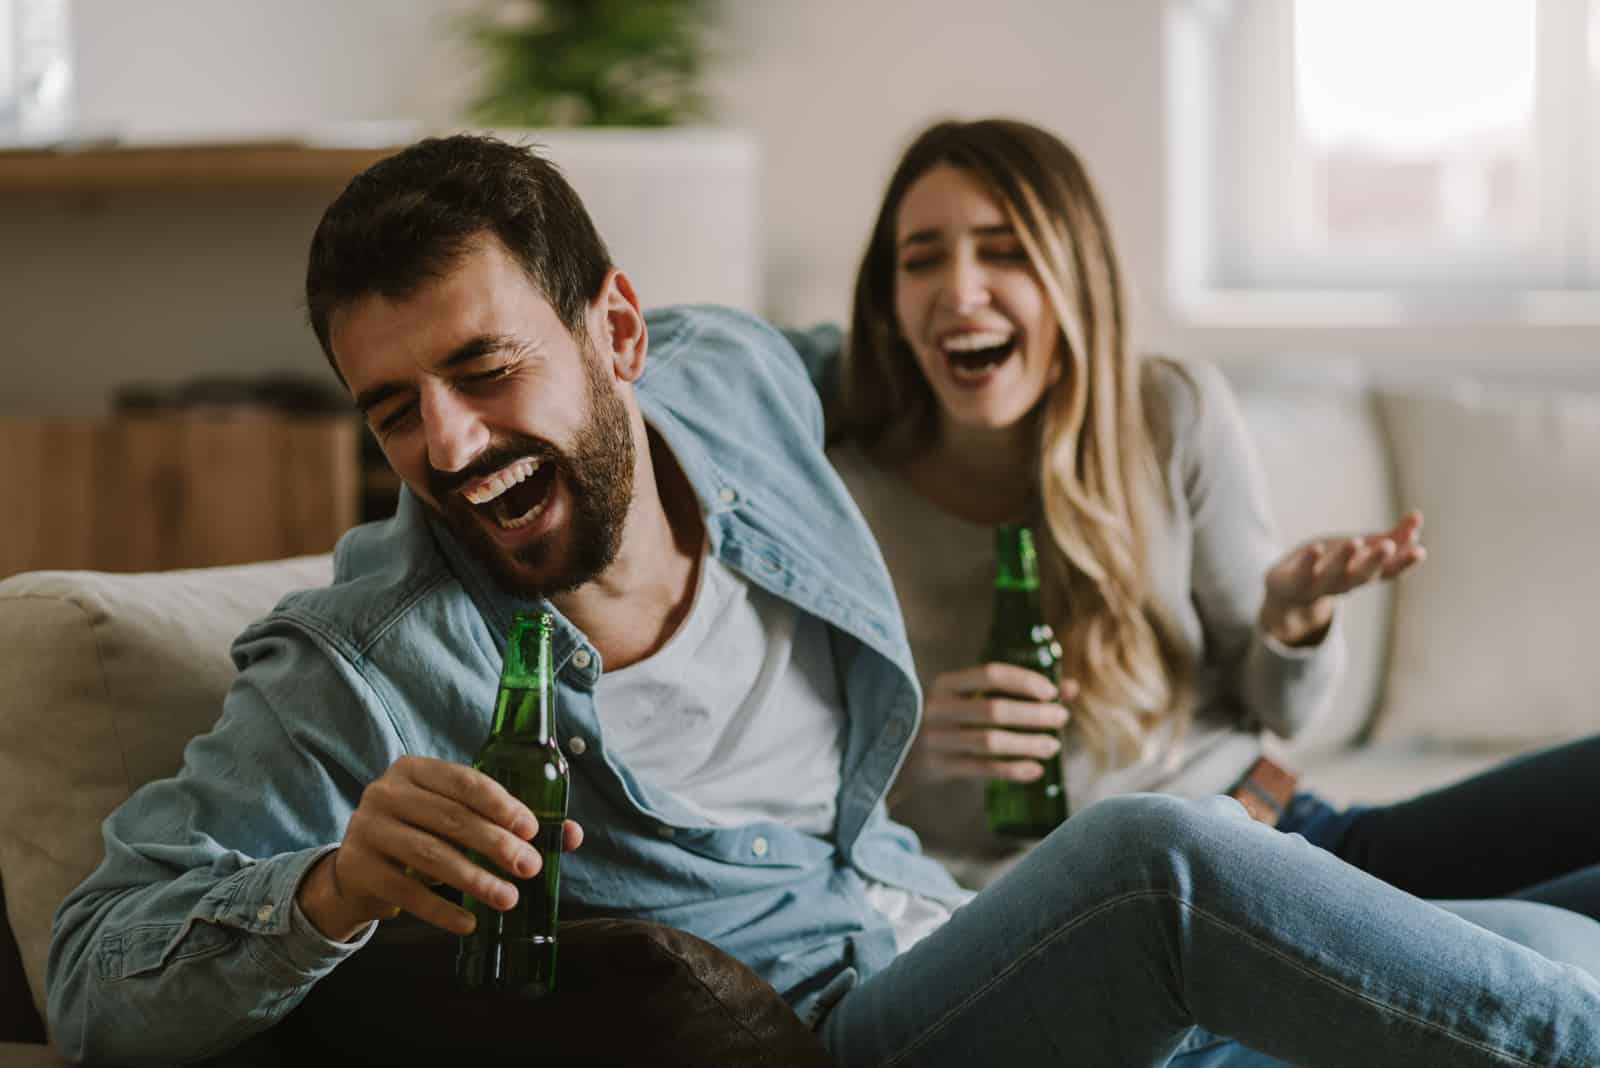 un uomo e una donna sorridenti seduti sul divano a bere birra